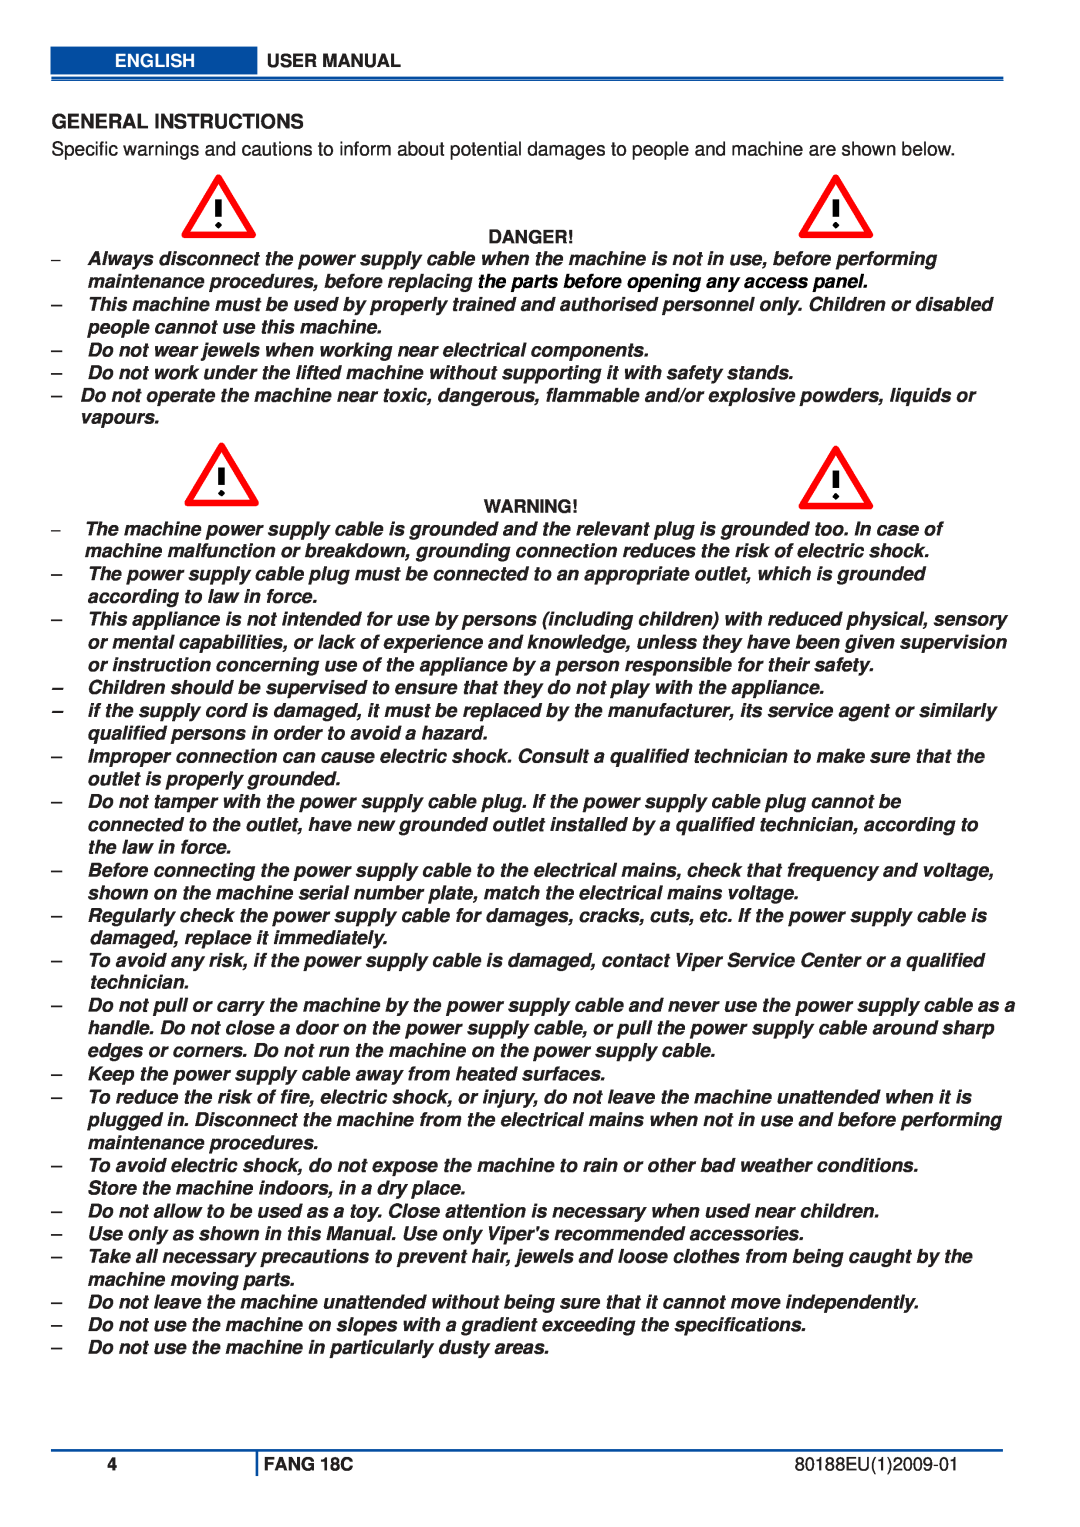 Viper FANG 18C user manual General Instructions, Danger, 80188EU12009-01 